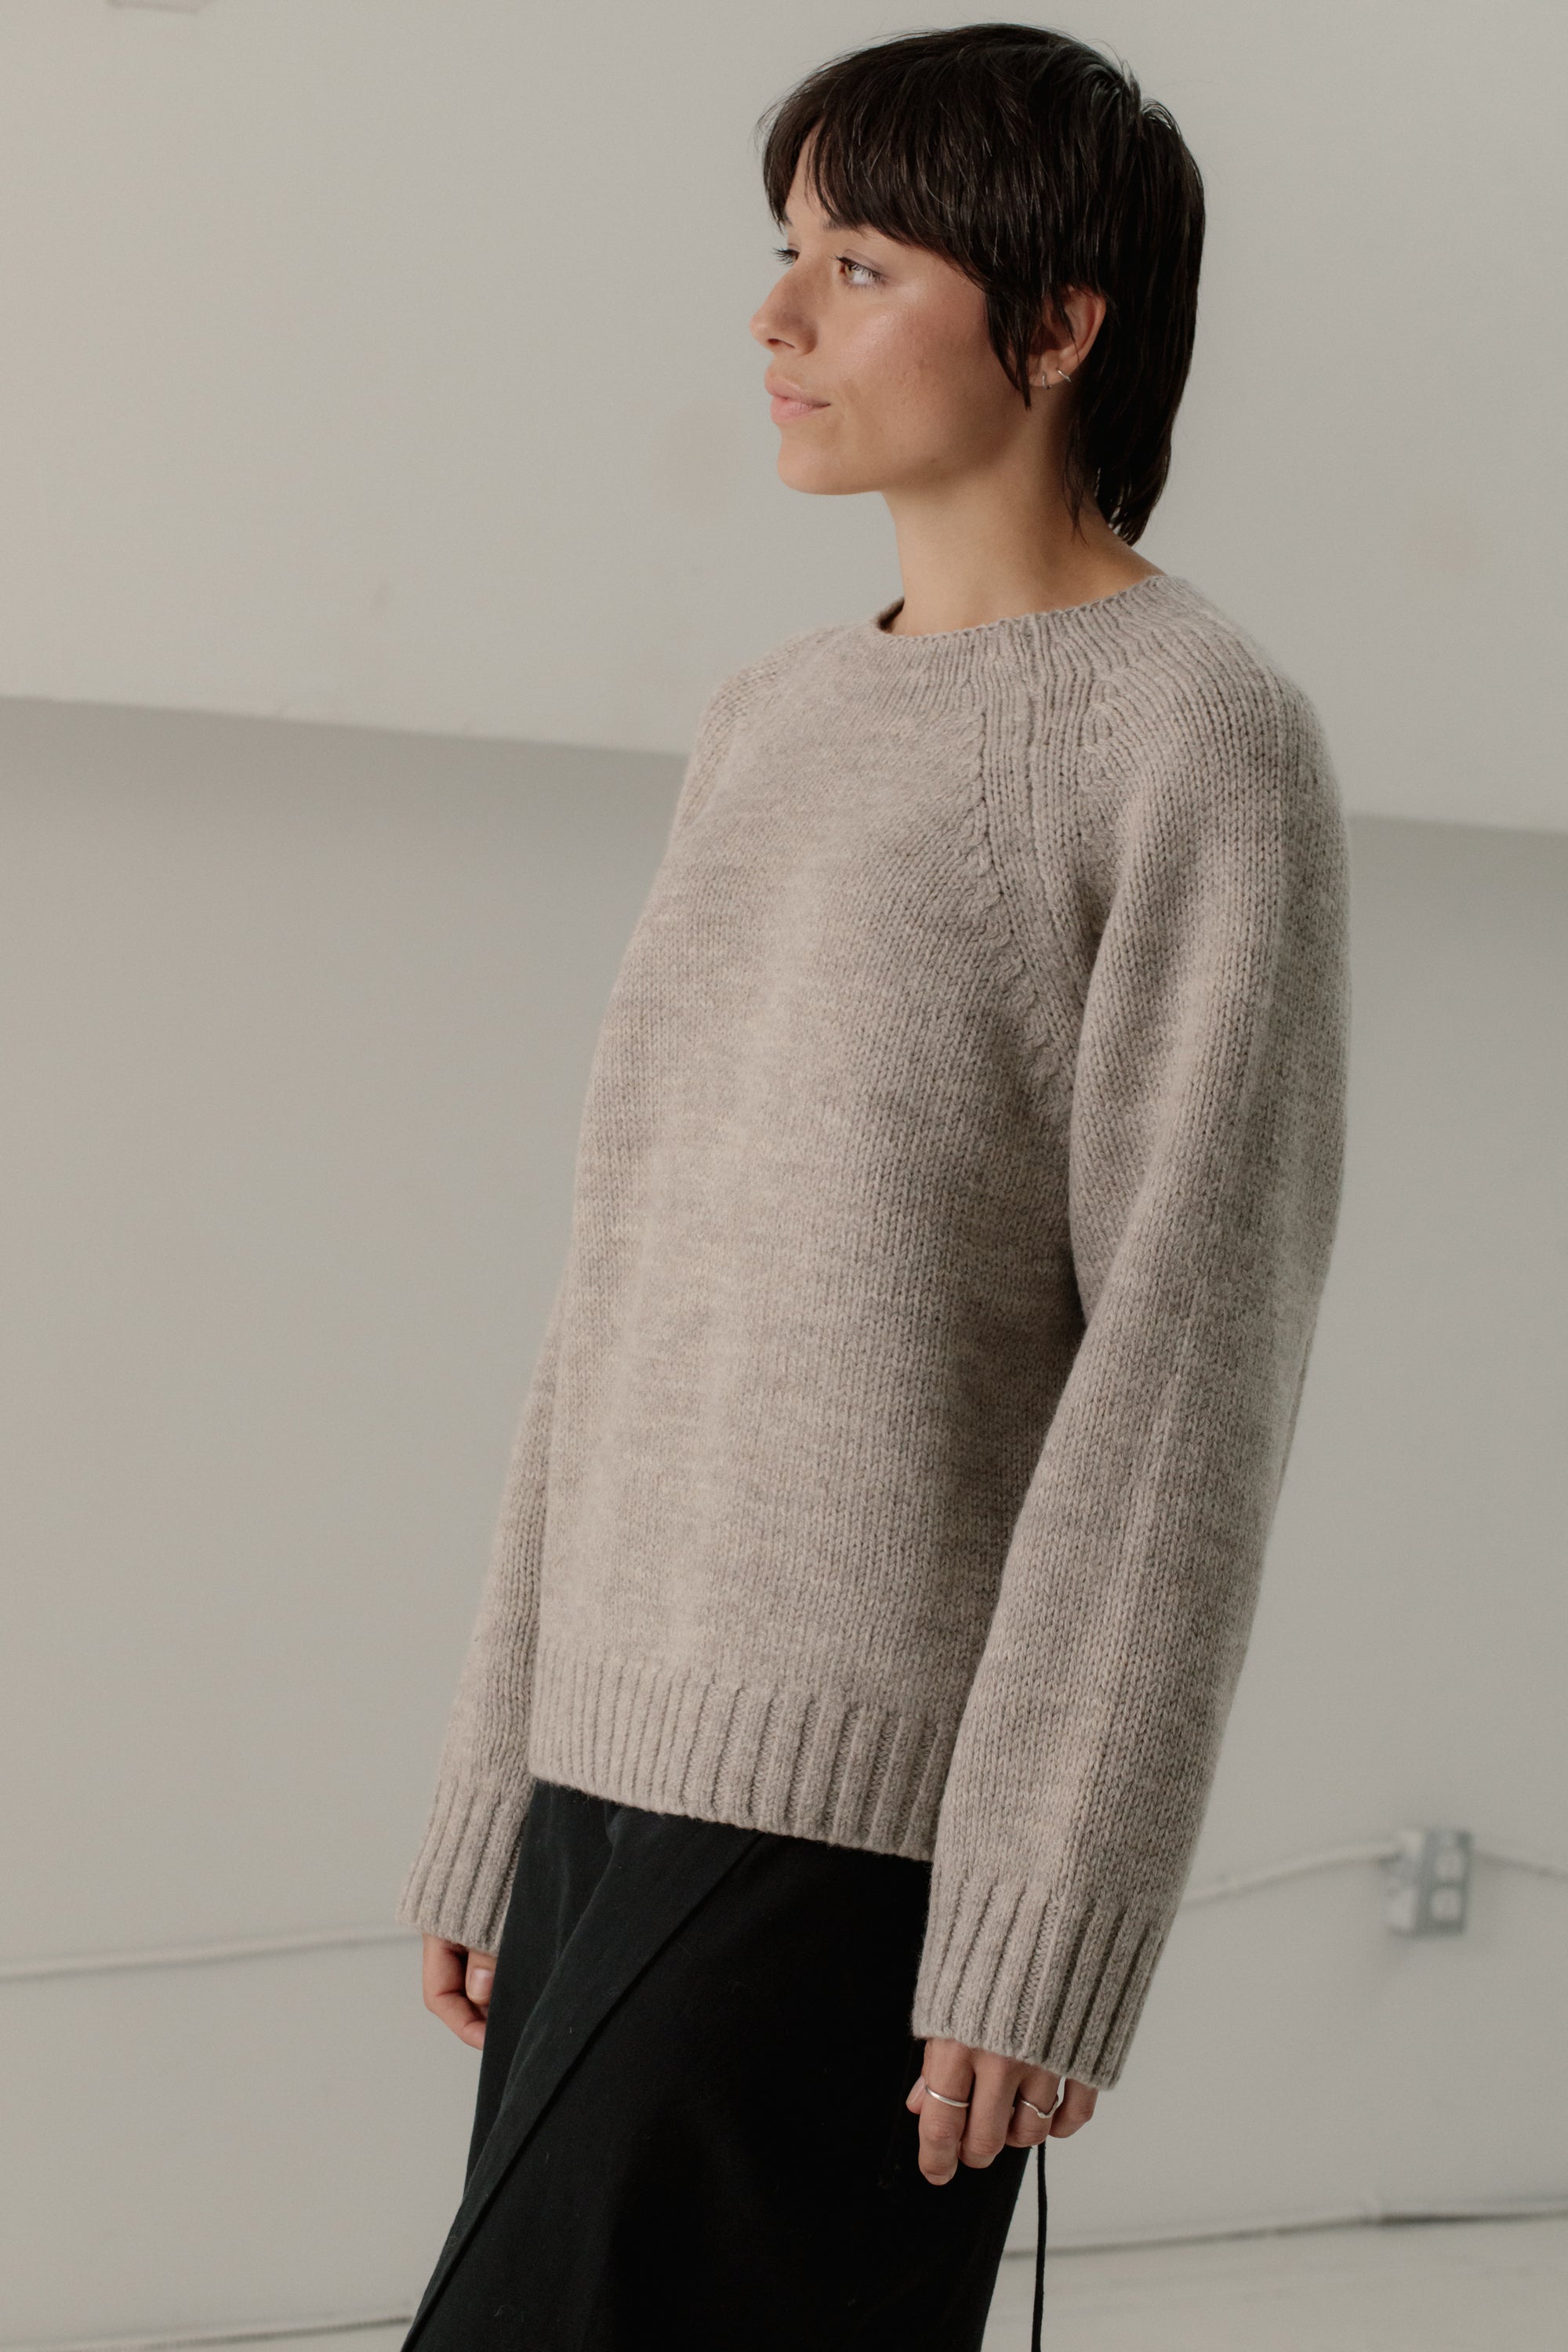 Bare Knitwear Channel Sweater / Driftwood